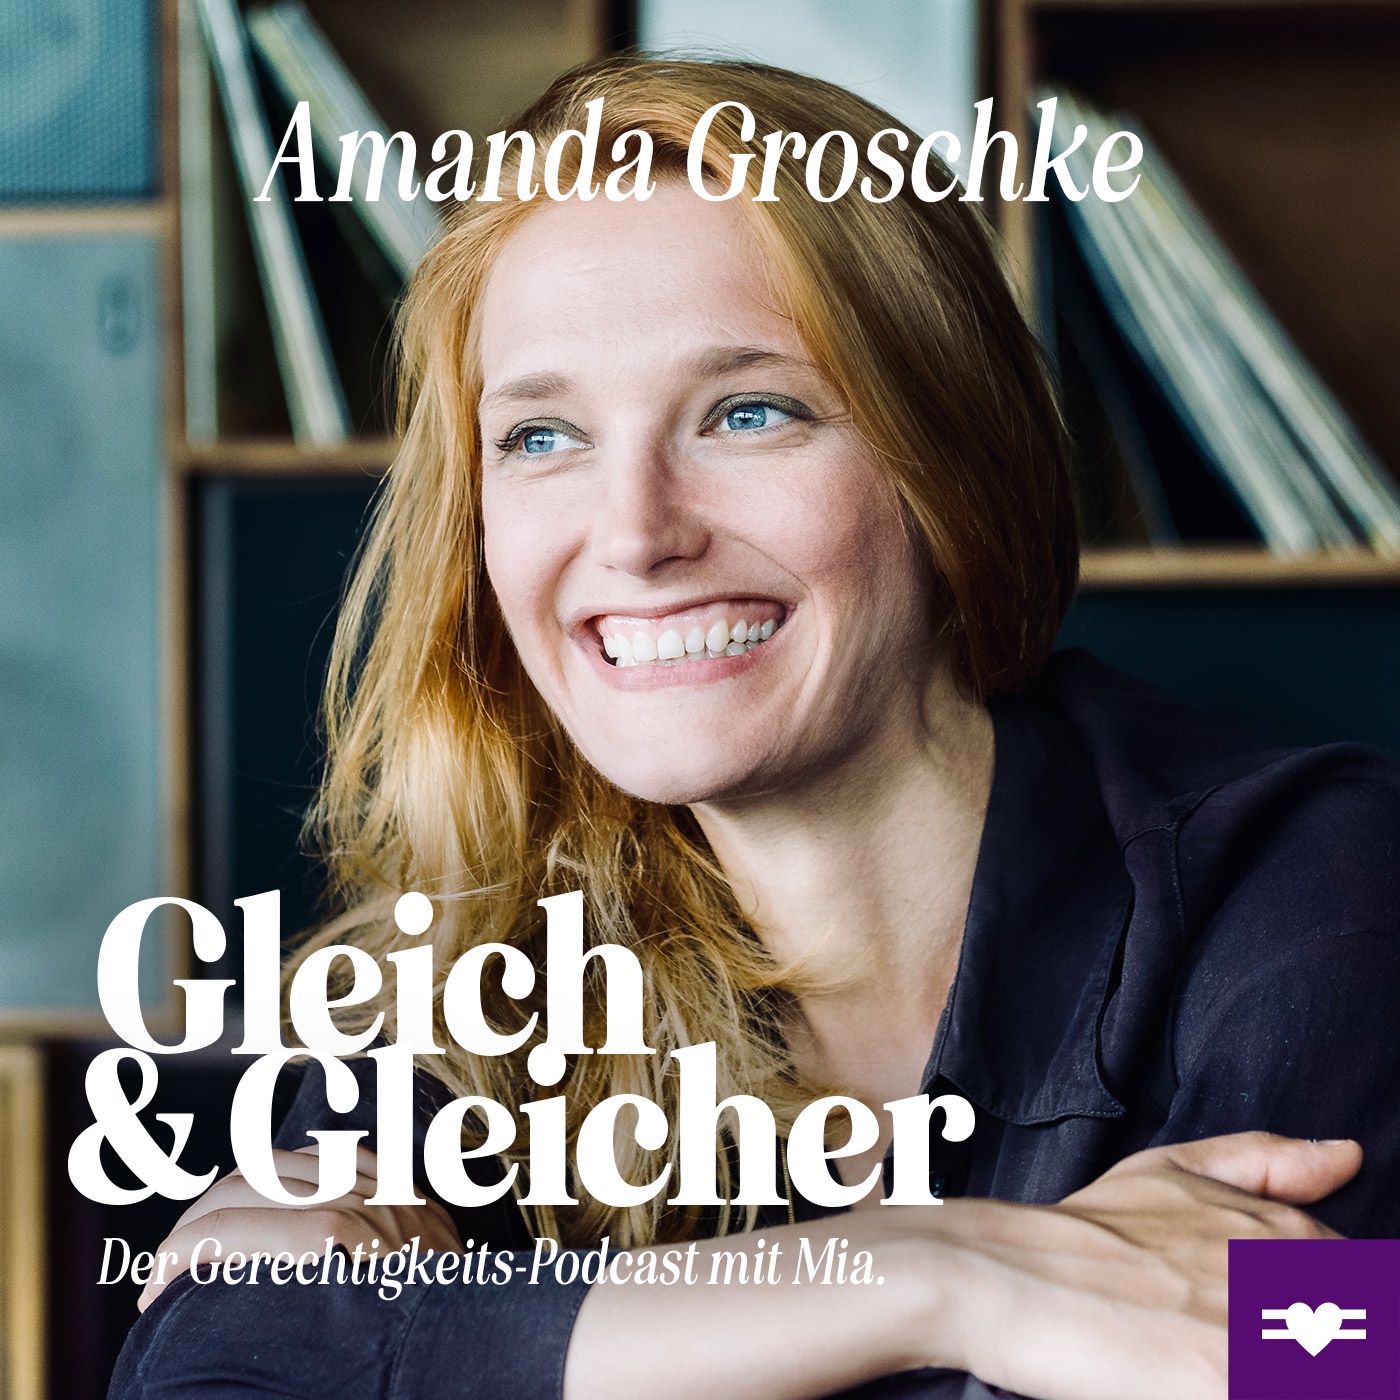 Amanda Groschke über gesellschaftlichen Wandel, Wertschätzung & Ideale